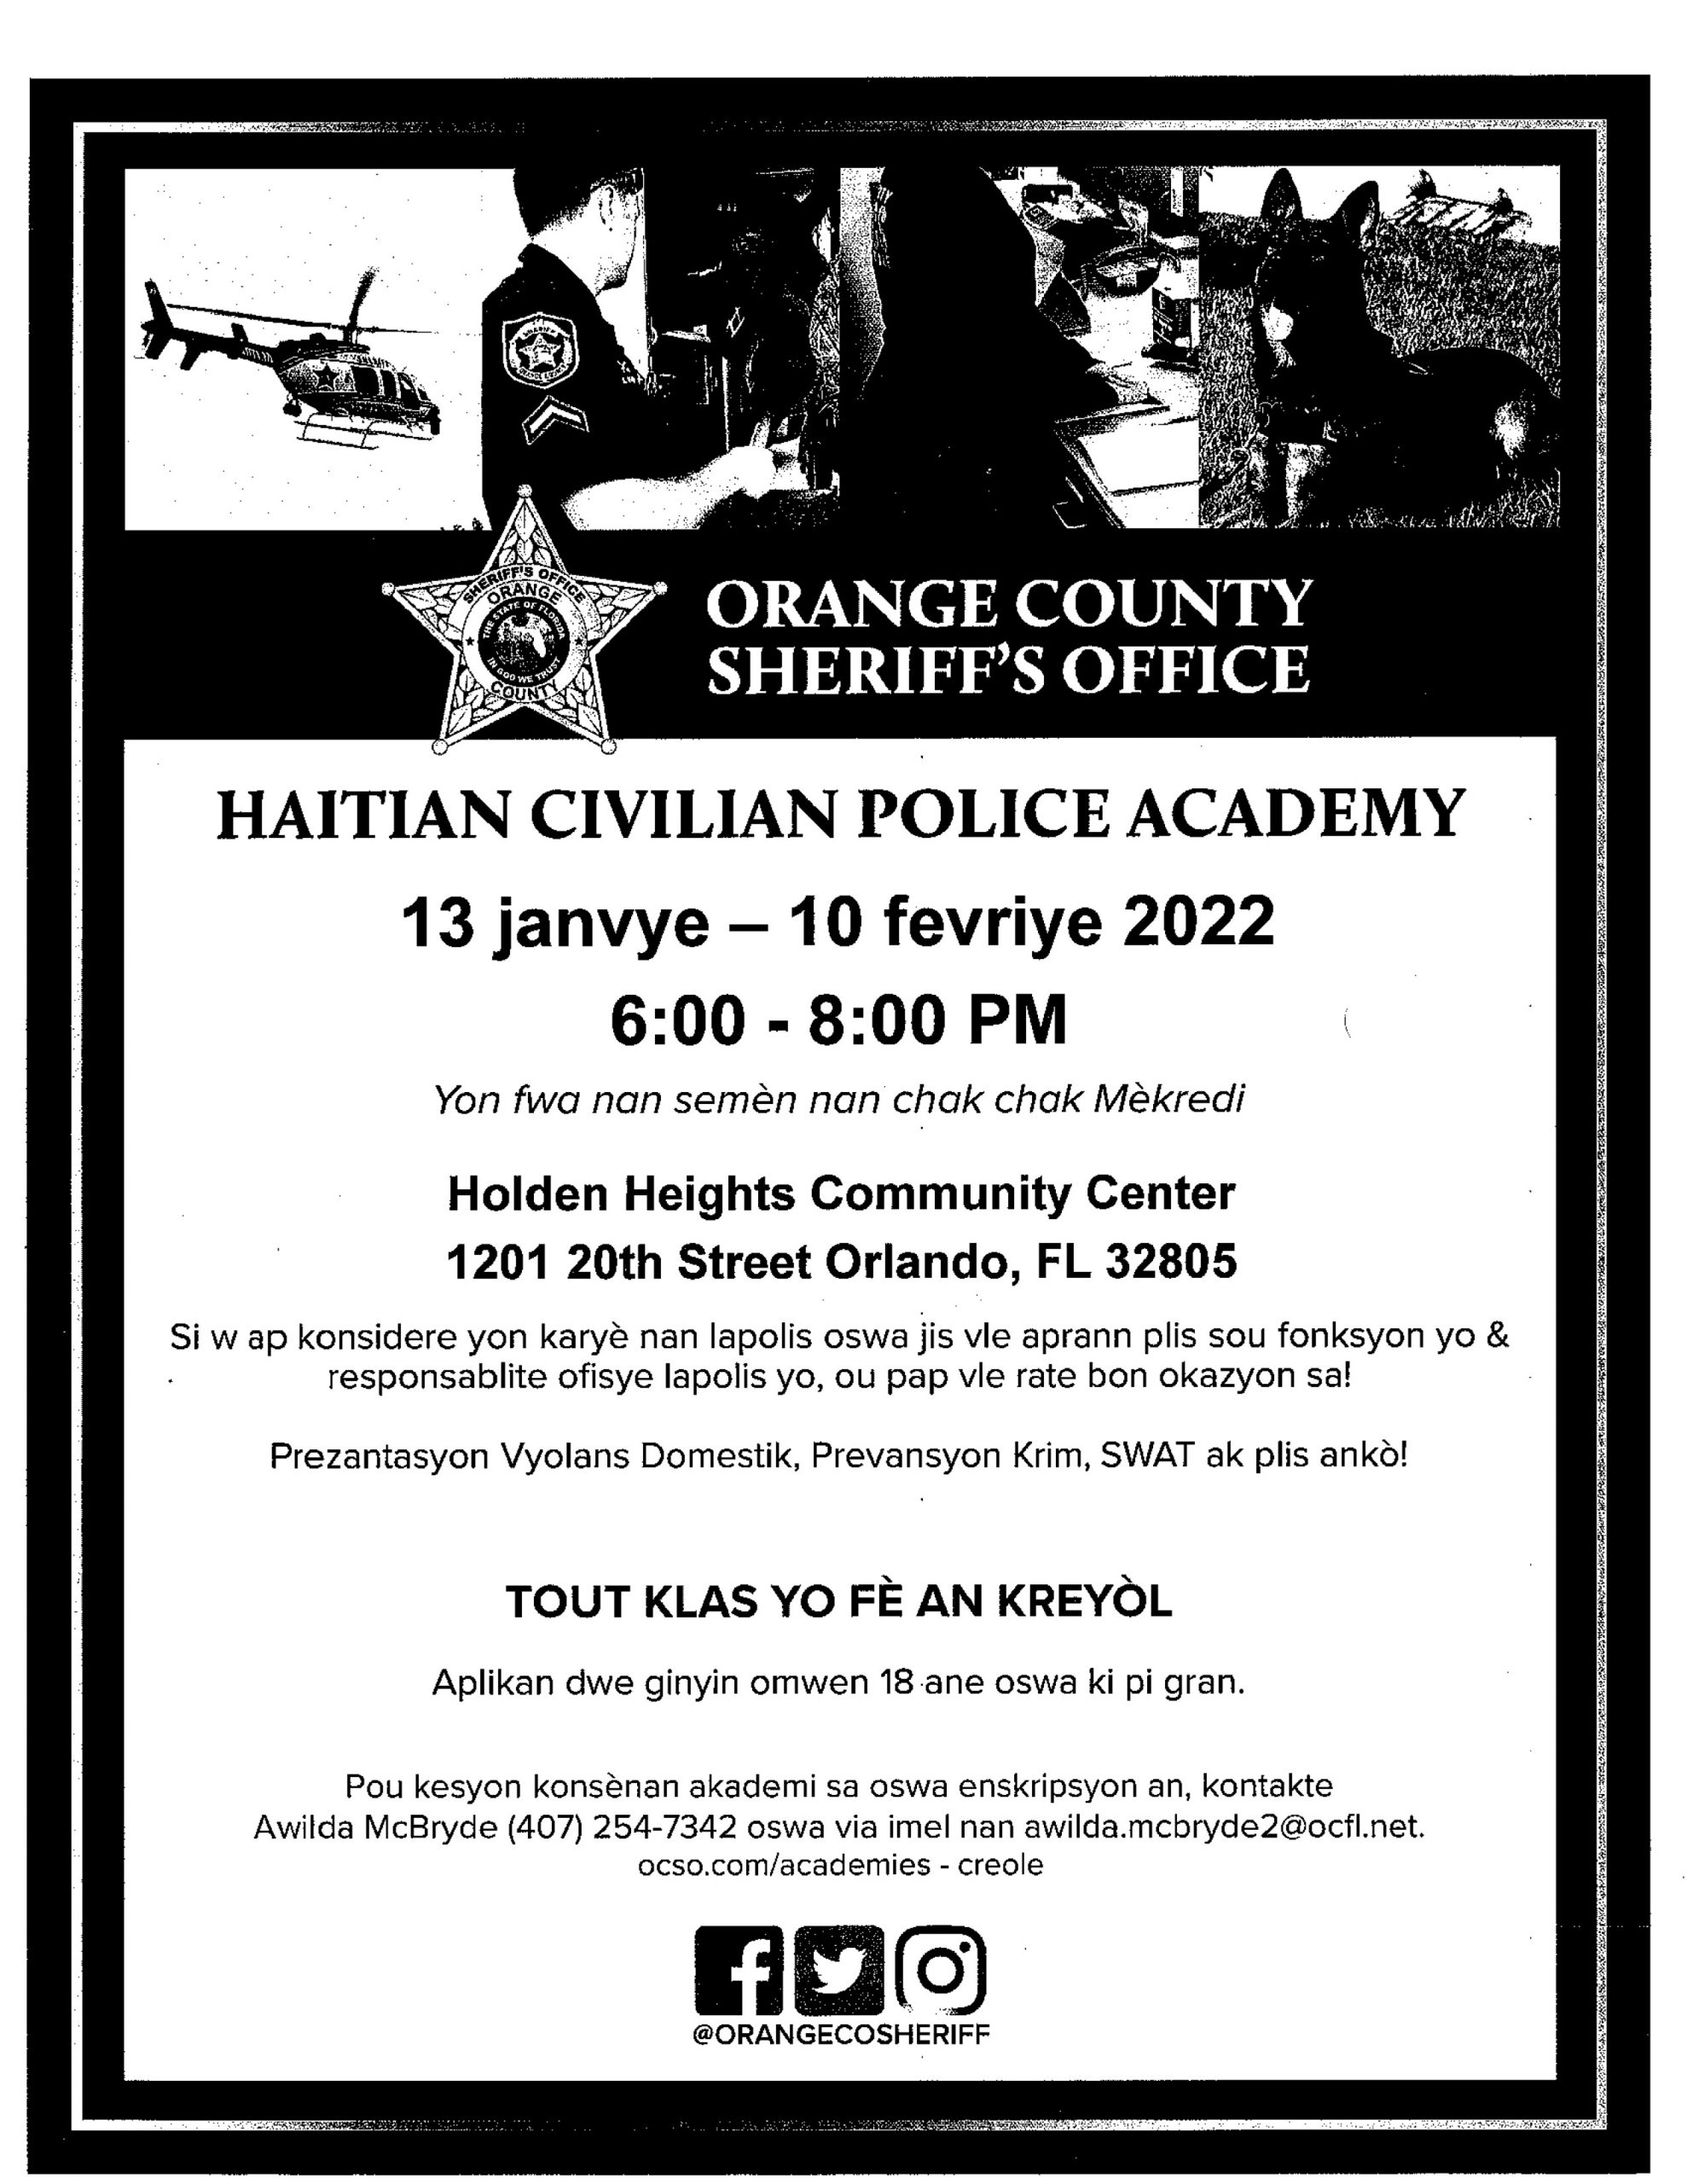 Haitian Police Academy Flyer